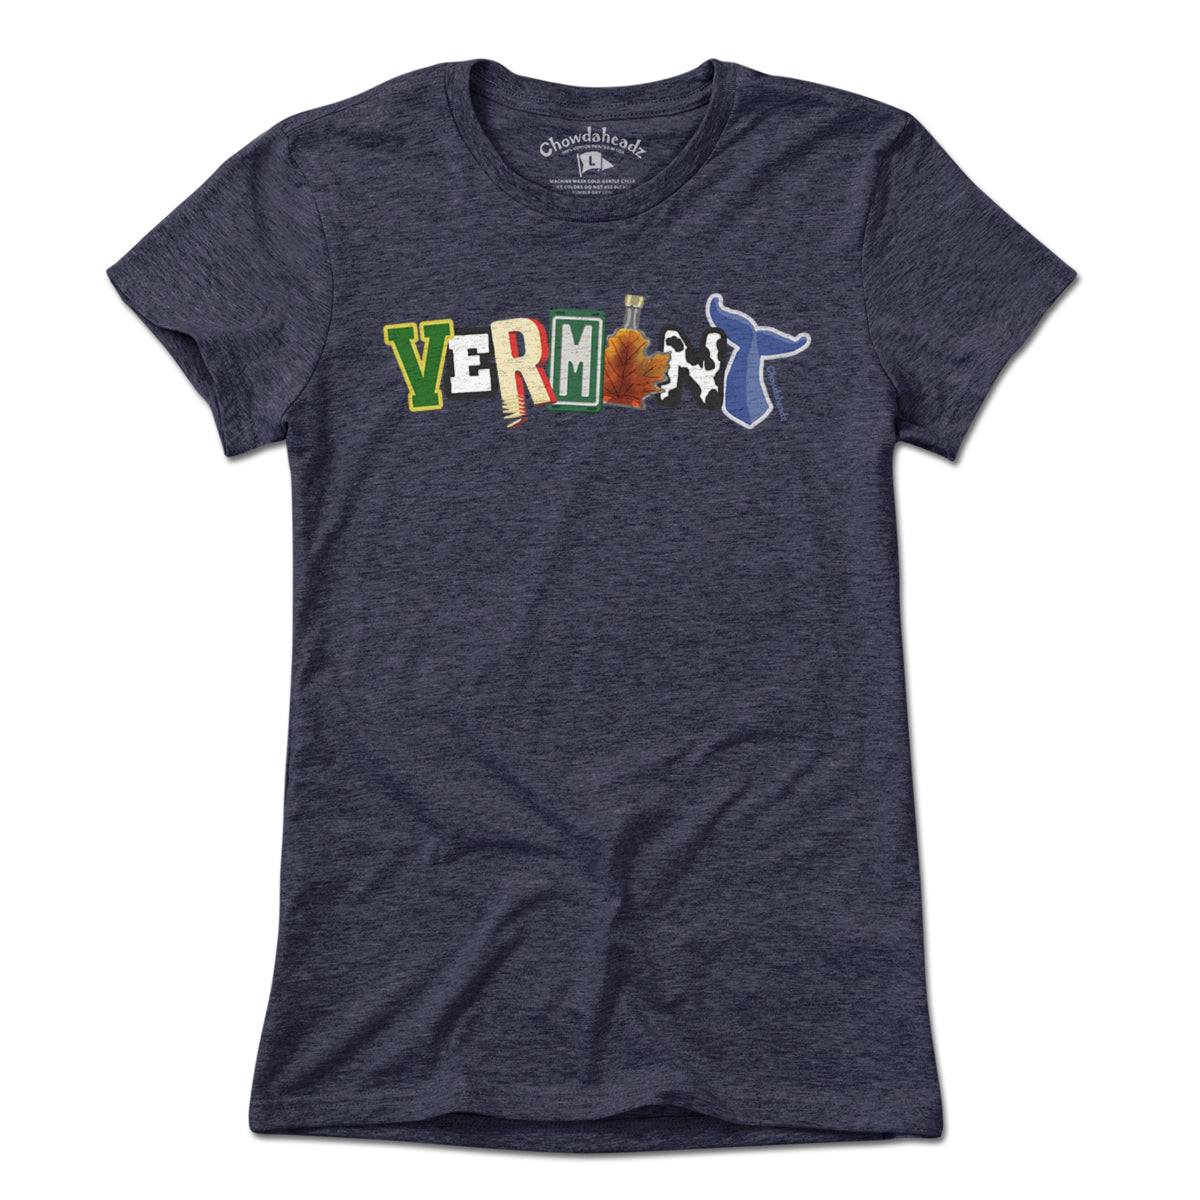 Vermont State Pride T-Shirt - Chowdaheadz